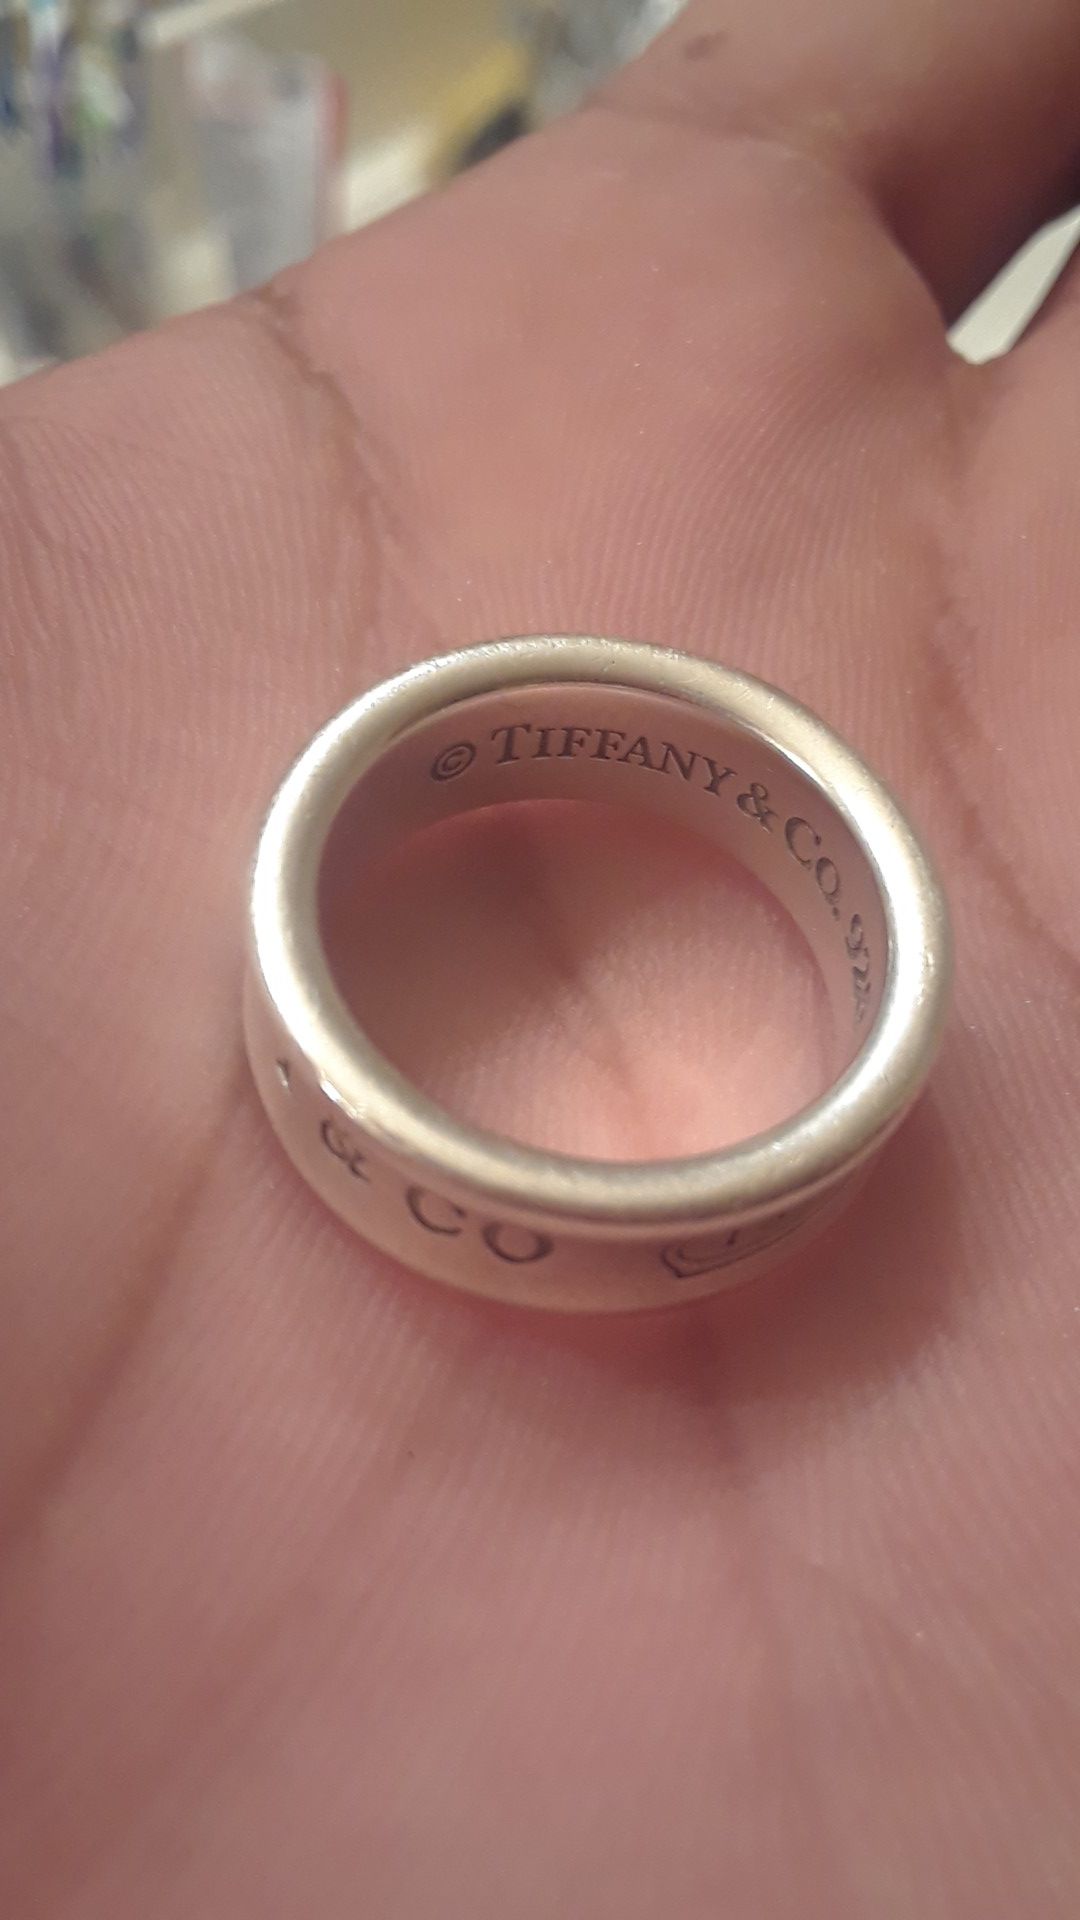 Tiffany & CO 1837 ring